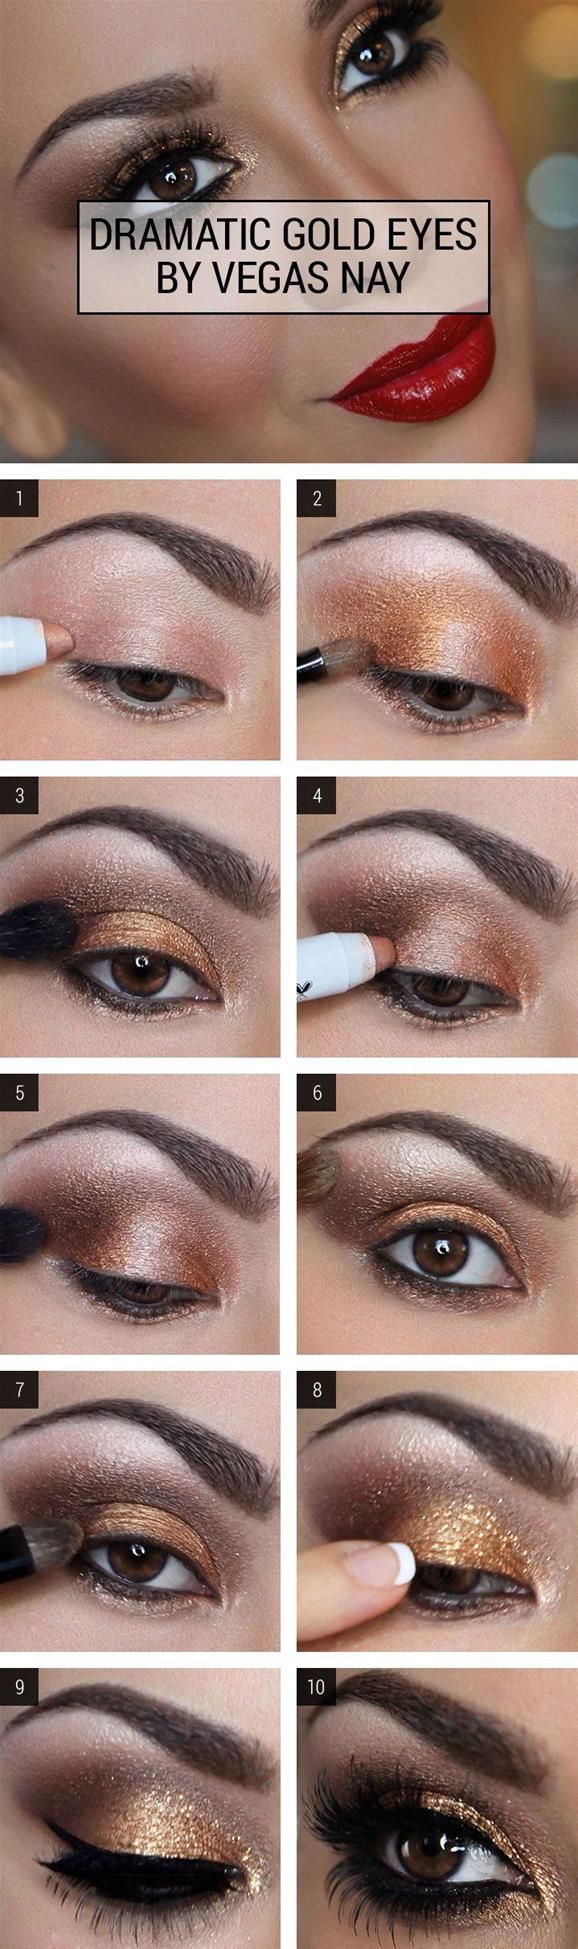 Dramatic Gold Eye Makeup